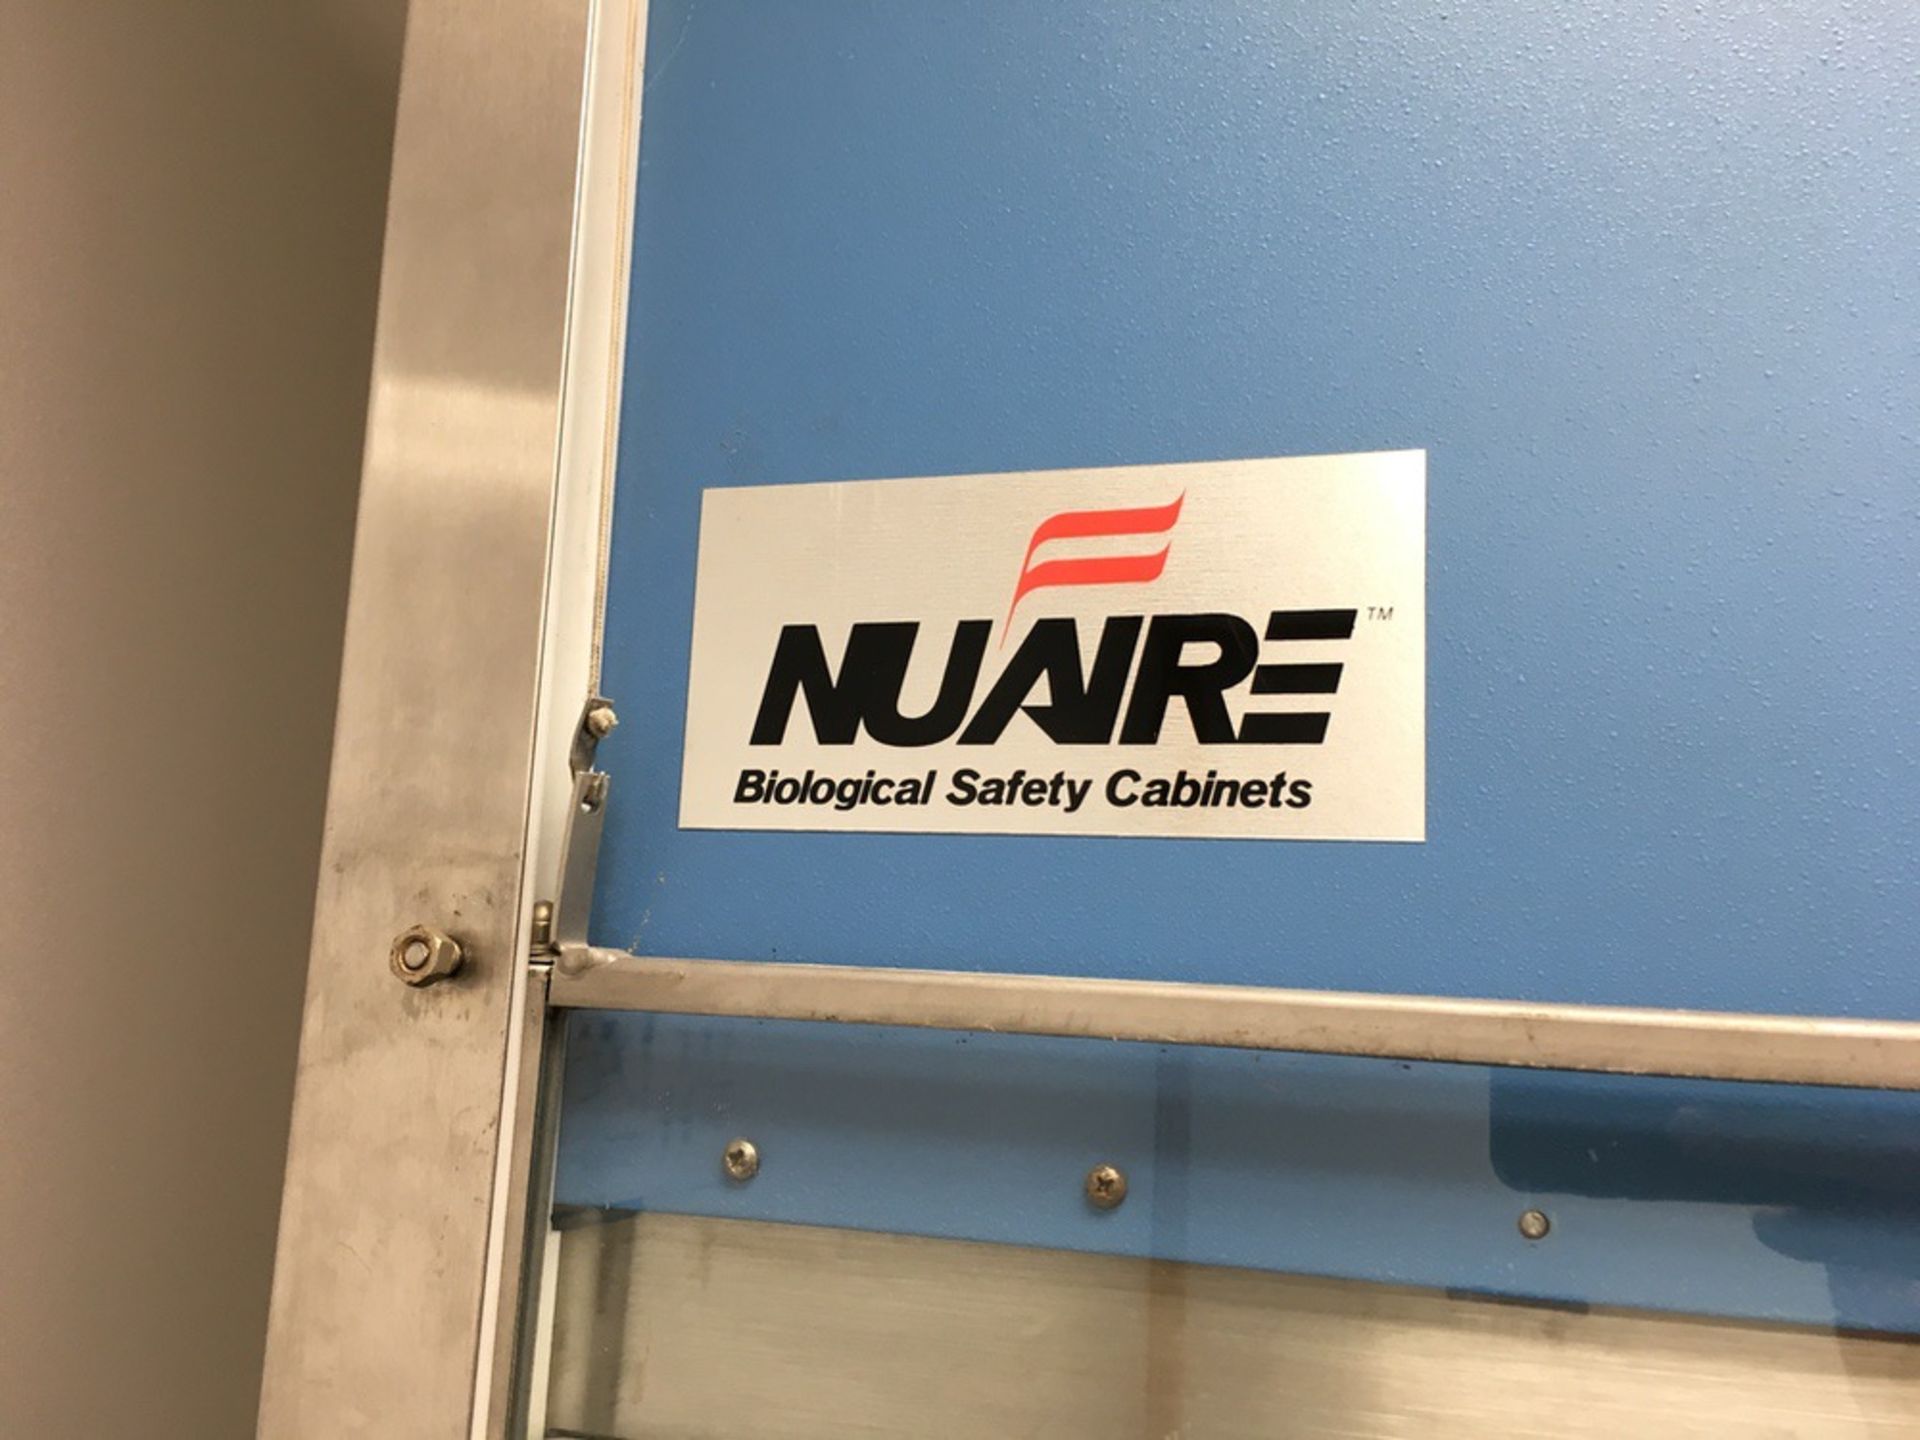 NuAire Model NU-425FM-400 Bilogical Safety Cabinet, S/N: 10676 QW | Rig Fee: $150 - Image 4 of 4